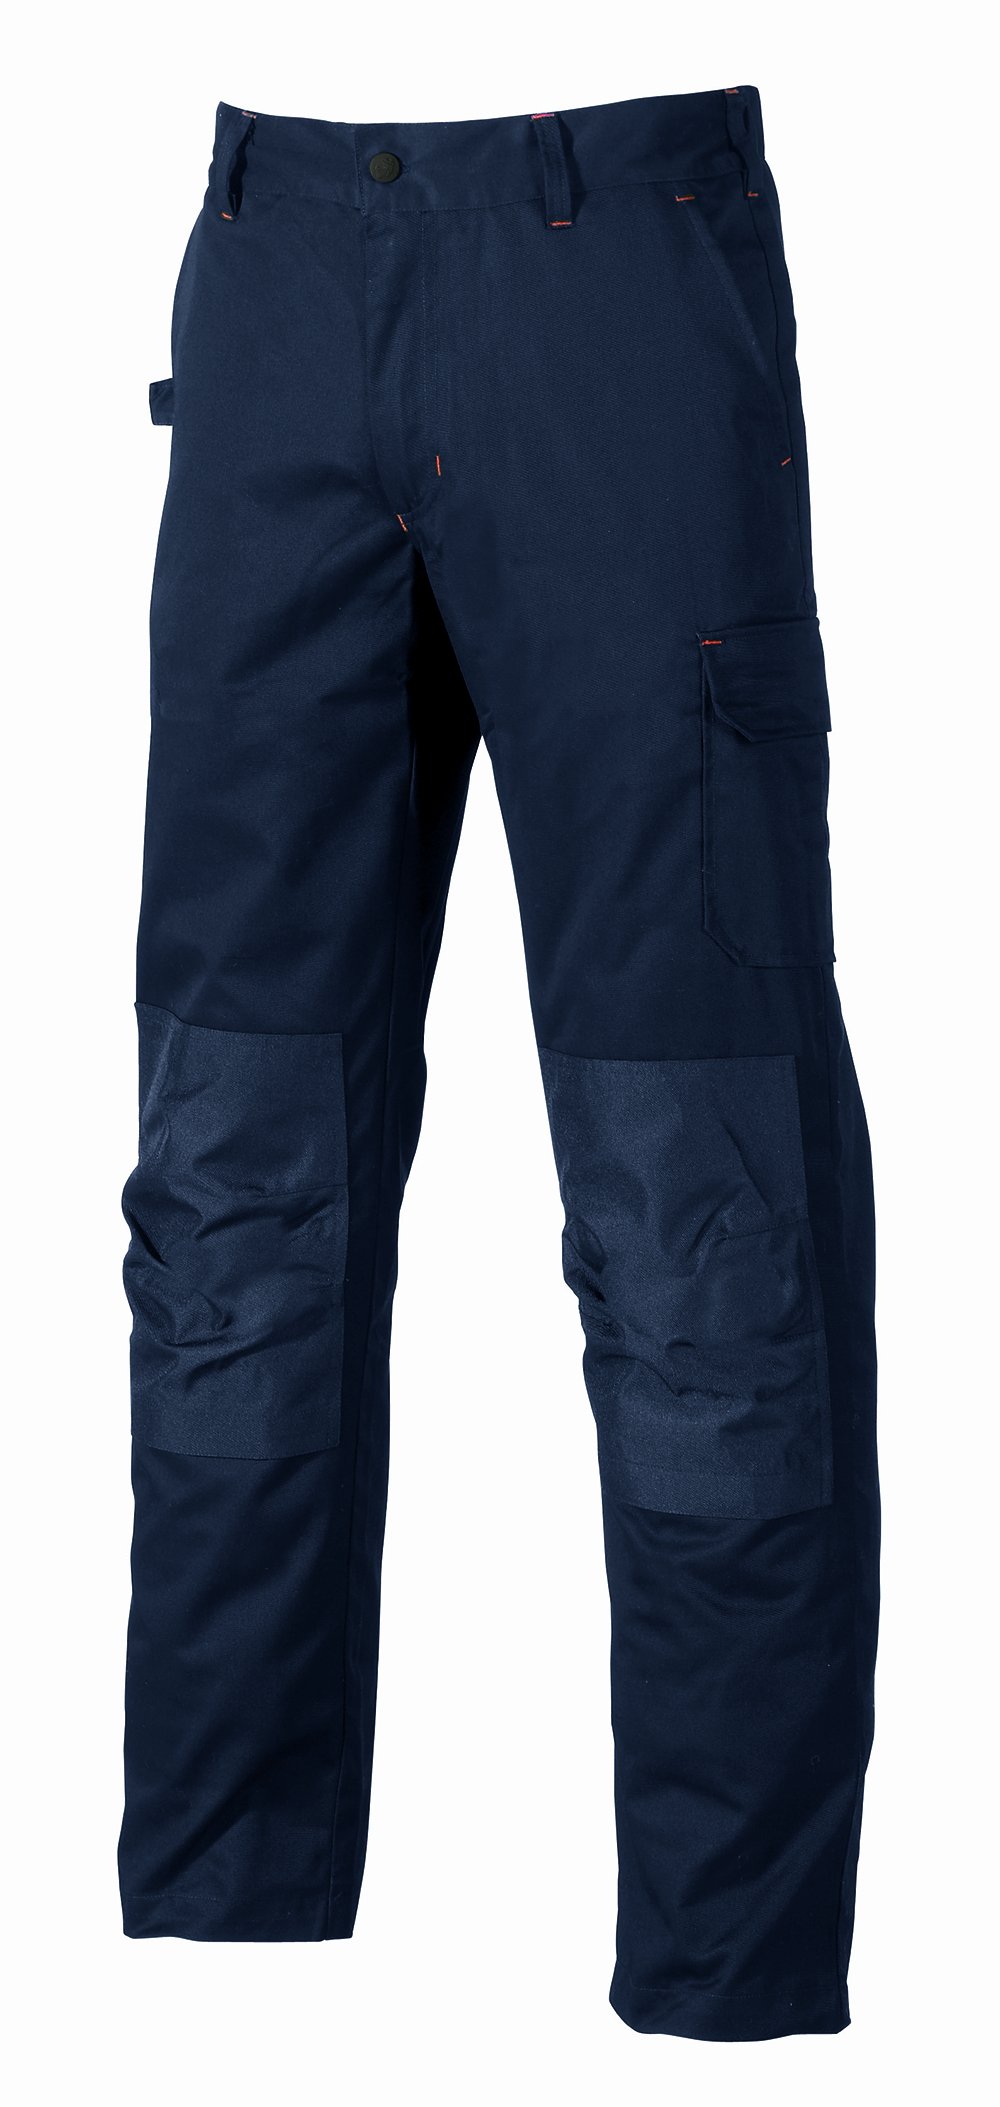 Pantalone da lavoro lungo alfa col.blu scuro tg.48